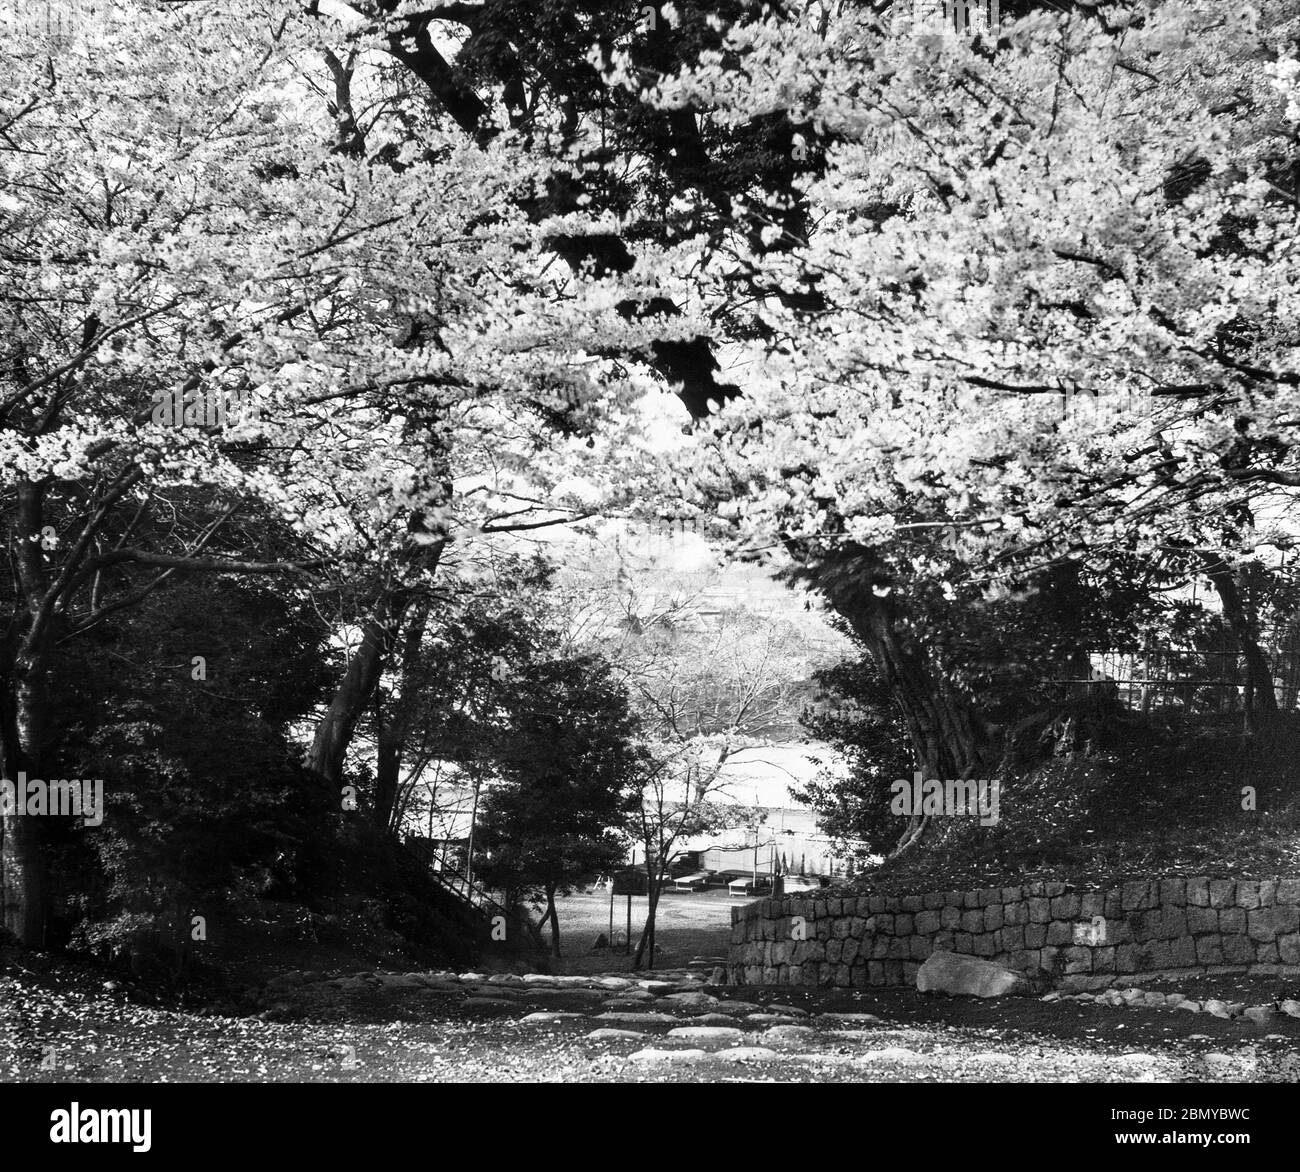 [ 1890 Japón - Parque Ueno, Tokio ] — Cerezo en el Parque Ueno en Tokio. En la parte trasera se puede ver una visión del estanque Shinobazu. A partir de una serie de diapositivas de vidrio publicadas (pero no fotografiadas) por el fotógrafo escocés George Washington Wilson (1823–1893). La firma de Wilson fue una de las mayores editoriales de copias fotográficas del mundo. tobogán de vidrio del siglo xix. Foto de stock